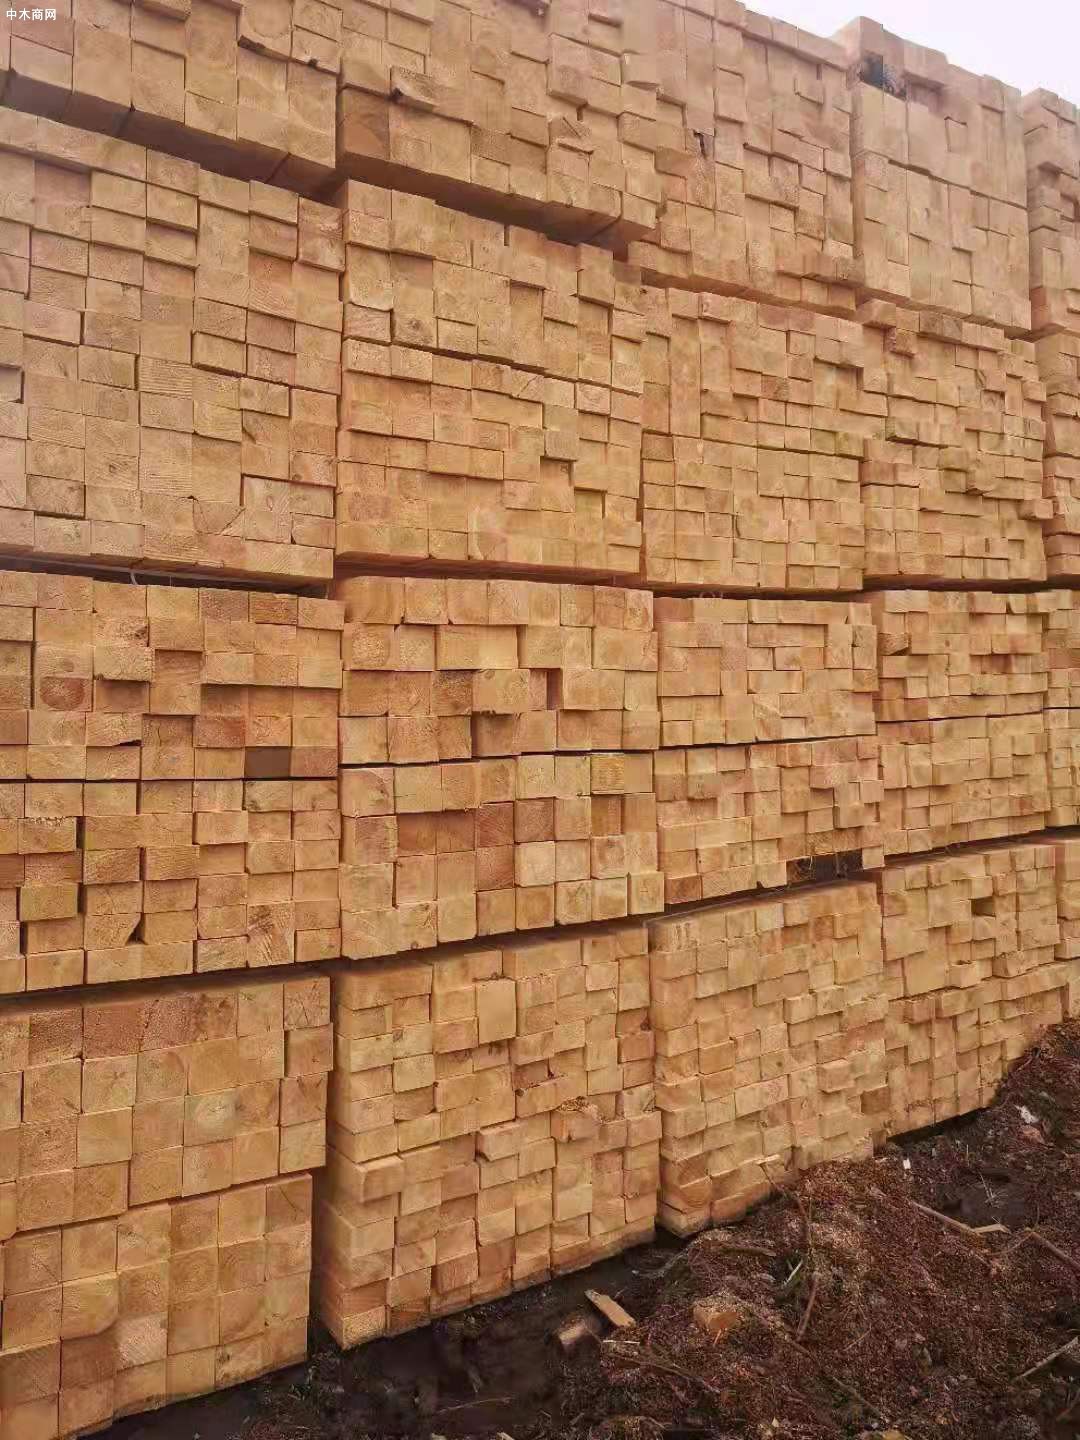 2021年俄罗斯纸浆和木材产量大幅增加